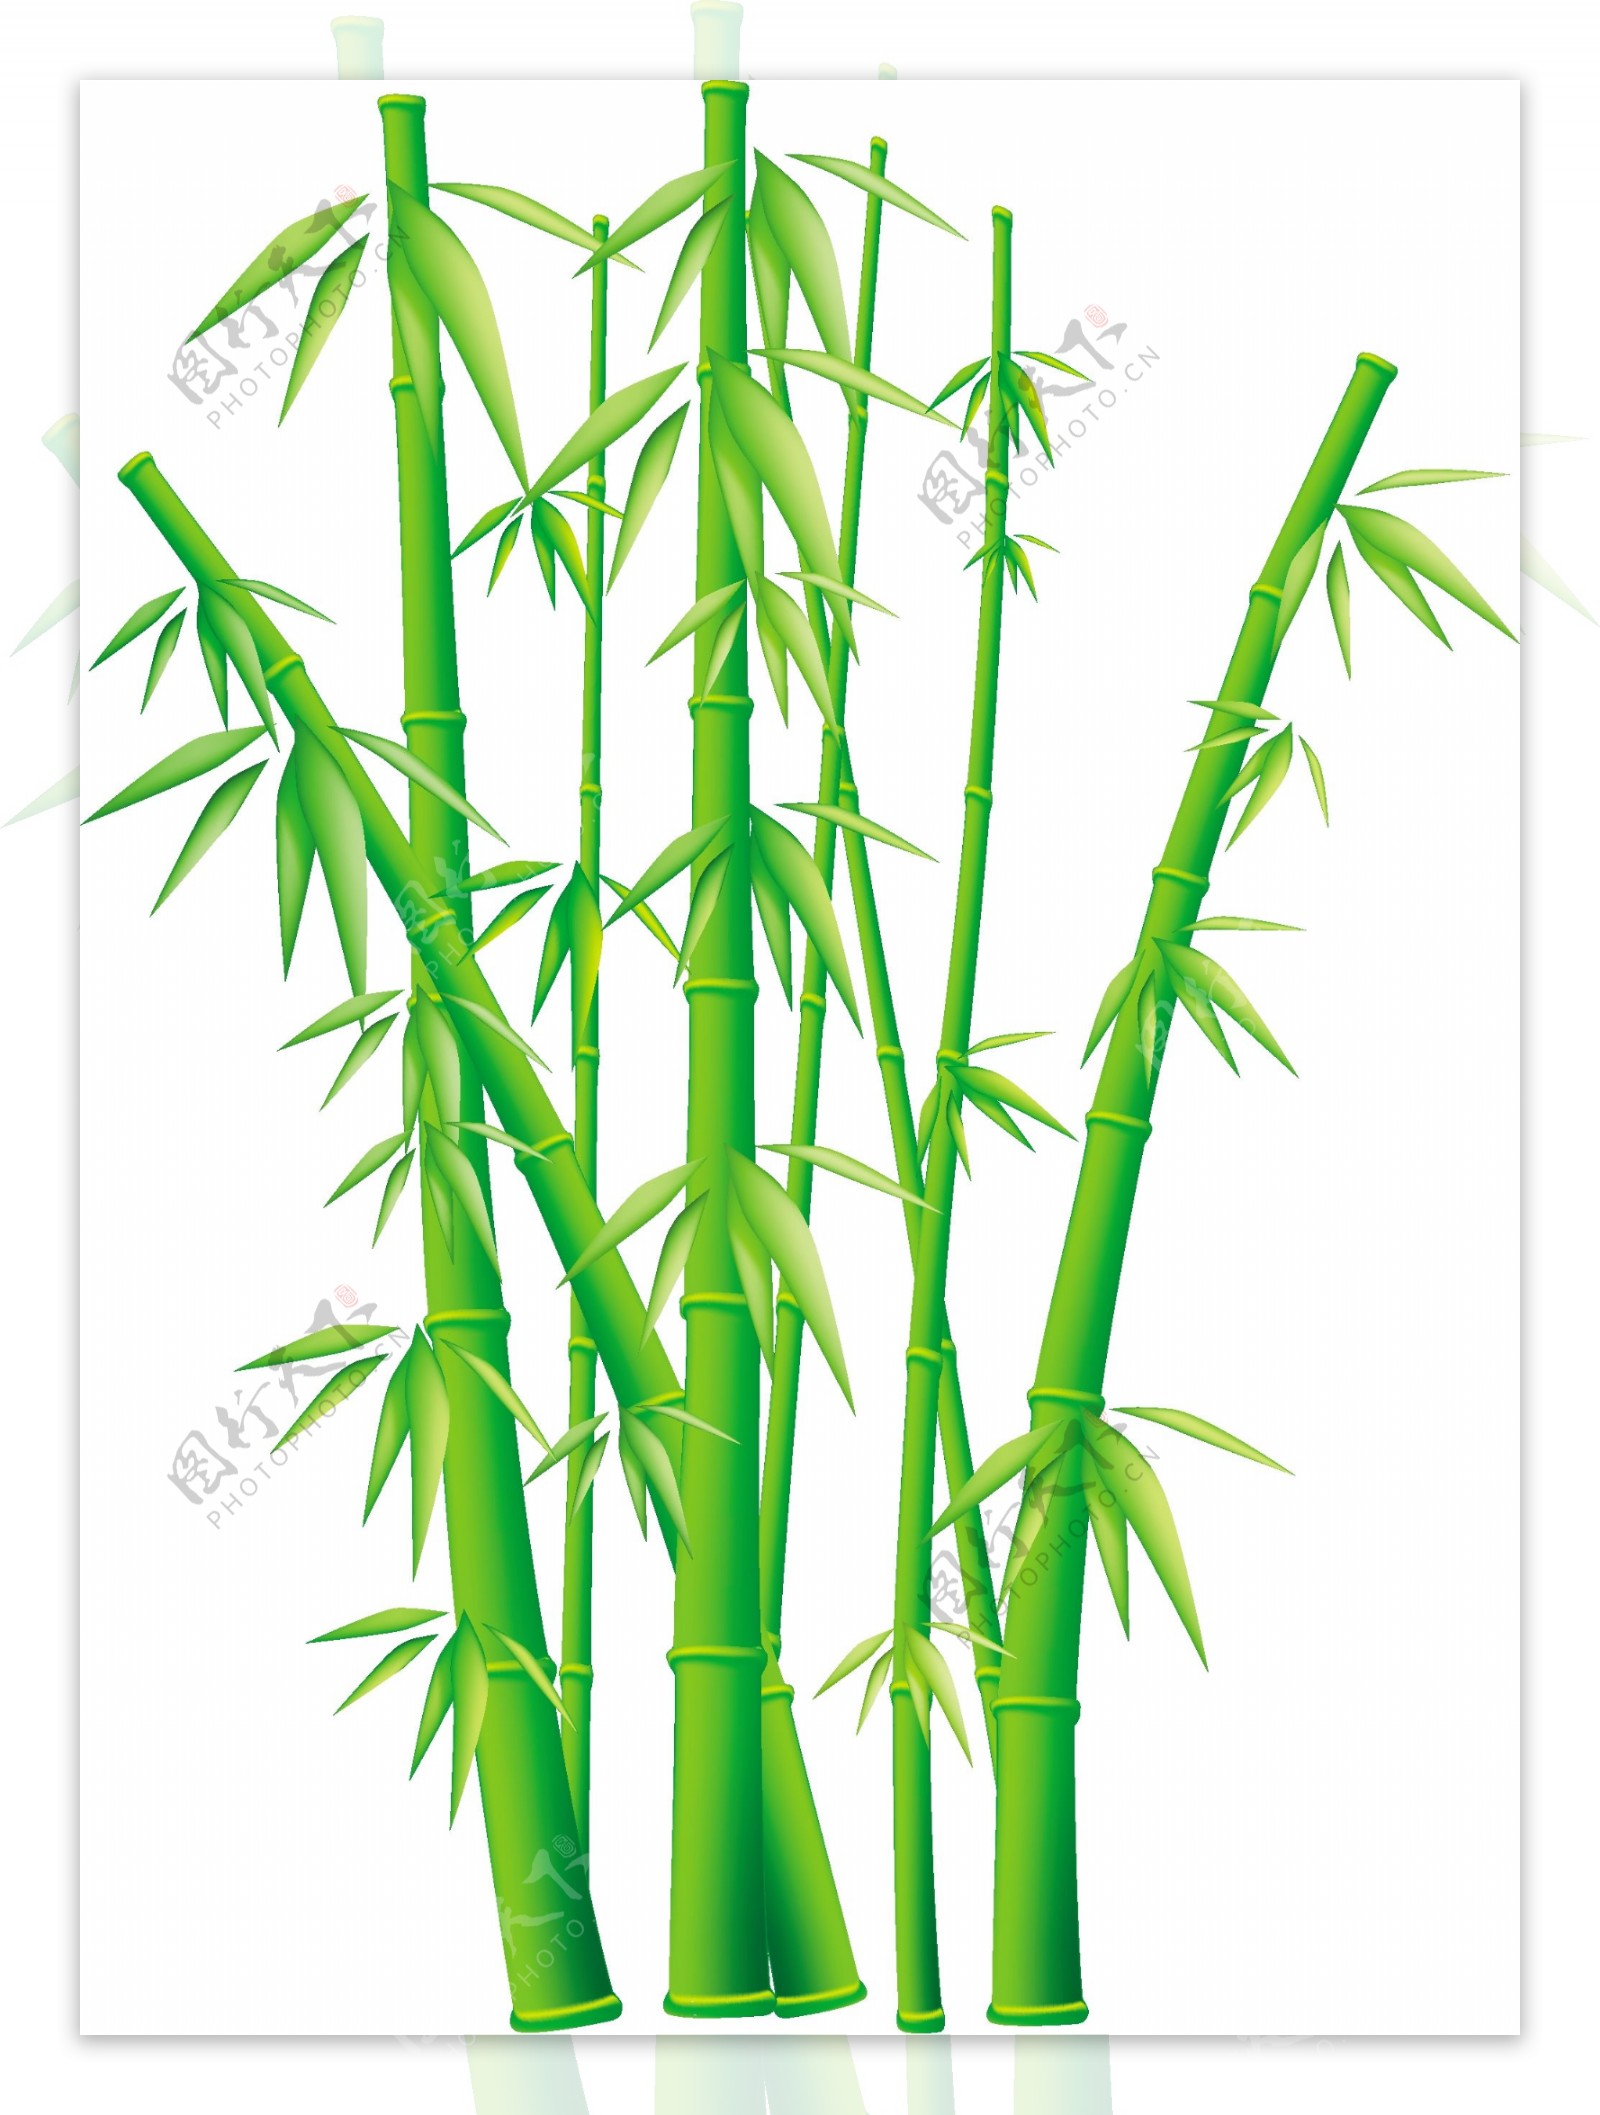 绿色的竹子矢量素材